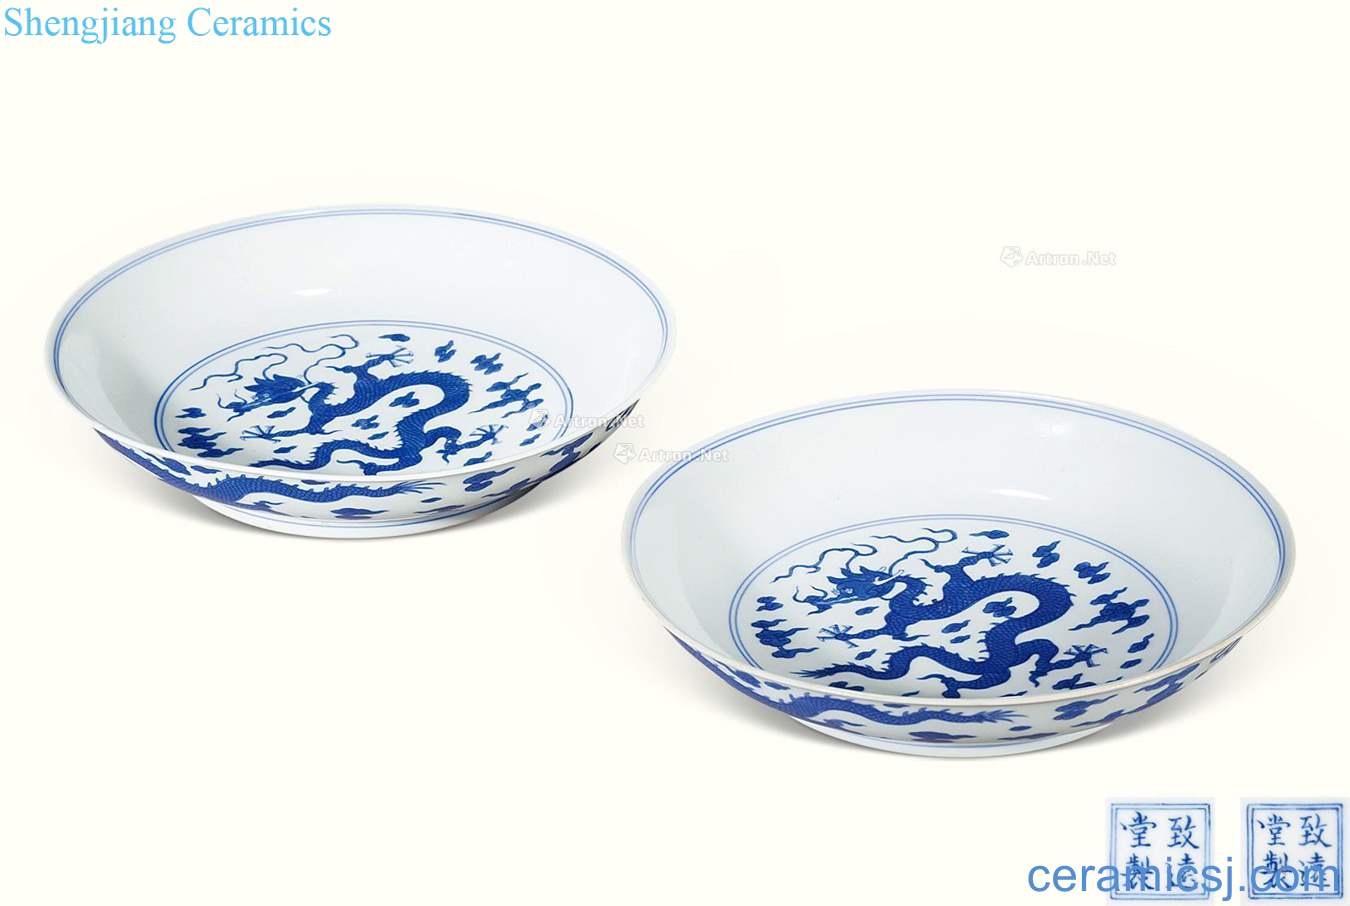 Qing qianlong "zhiyuan, hall" blue and white dragon plate (a)